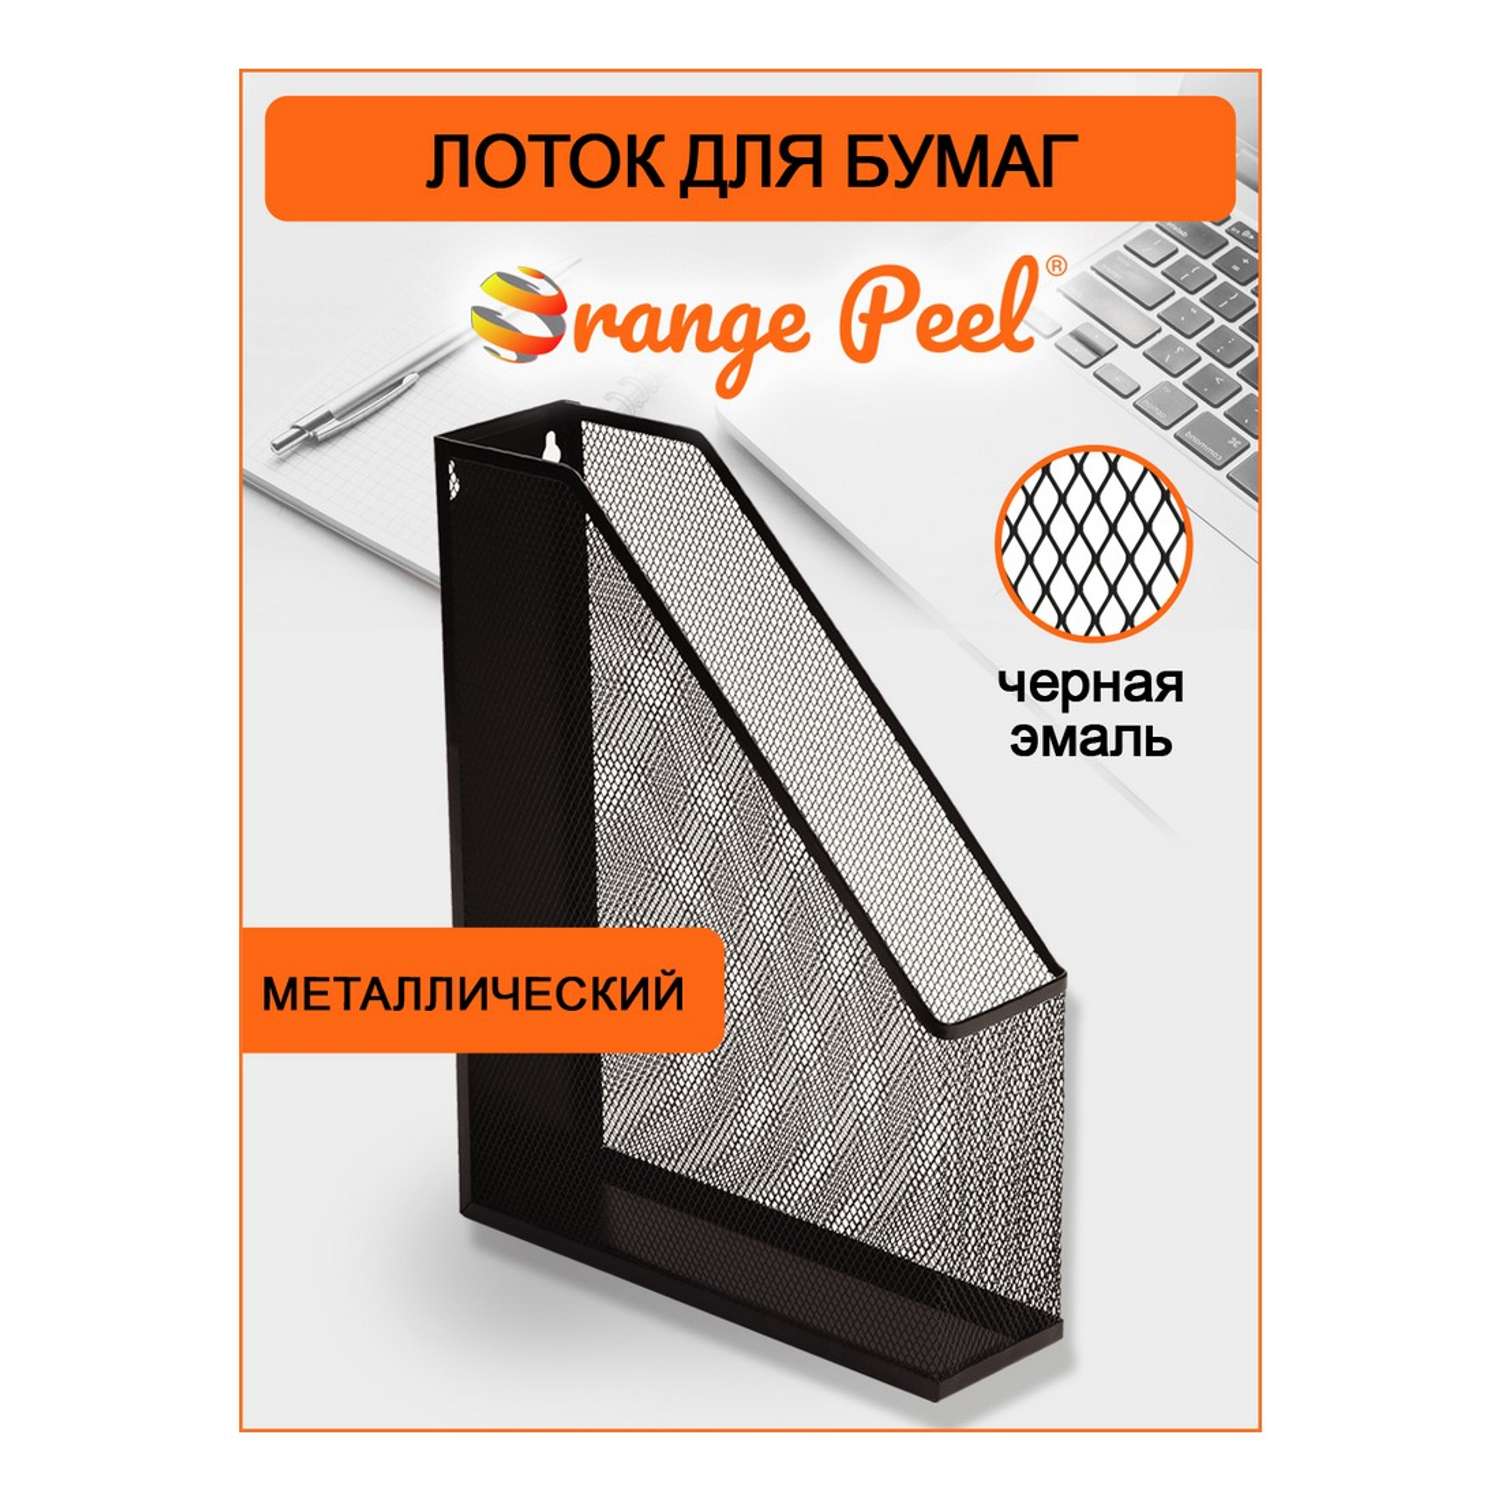 Лоток для бумаг Orange Peel вертикальный металлический черный - фото 1